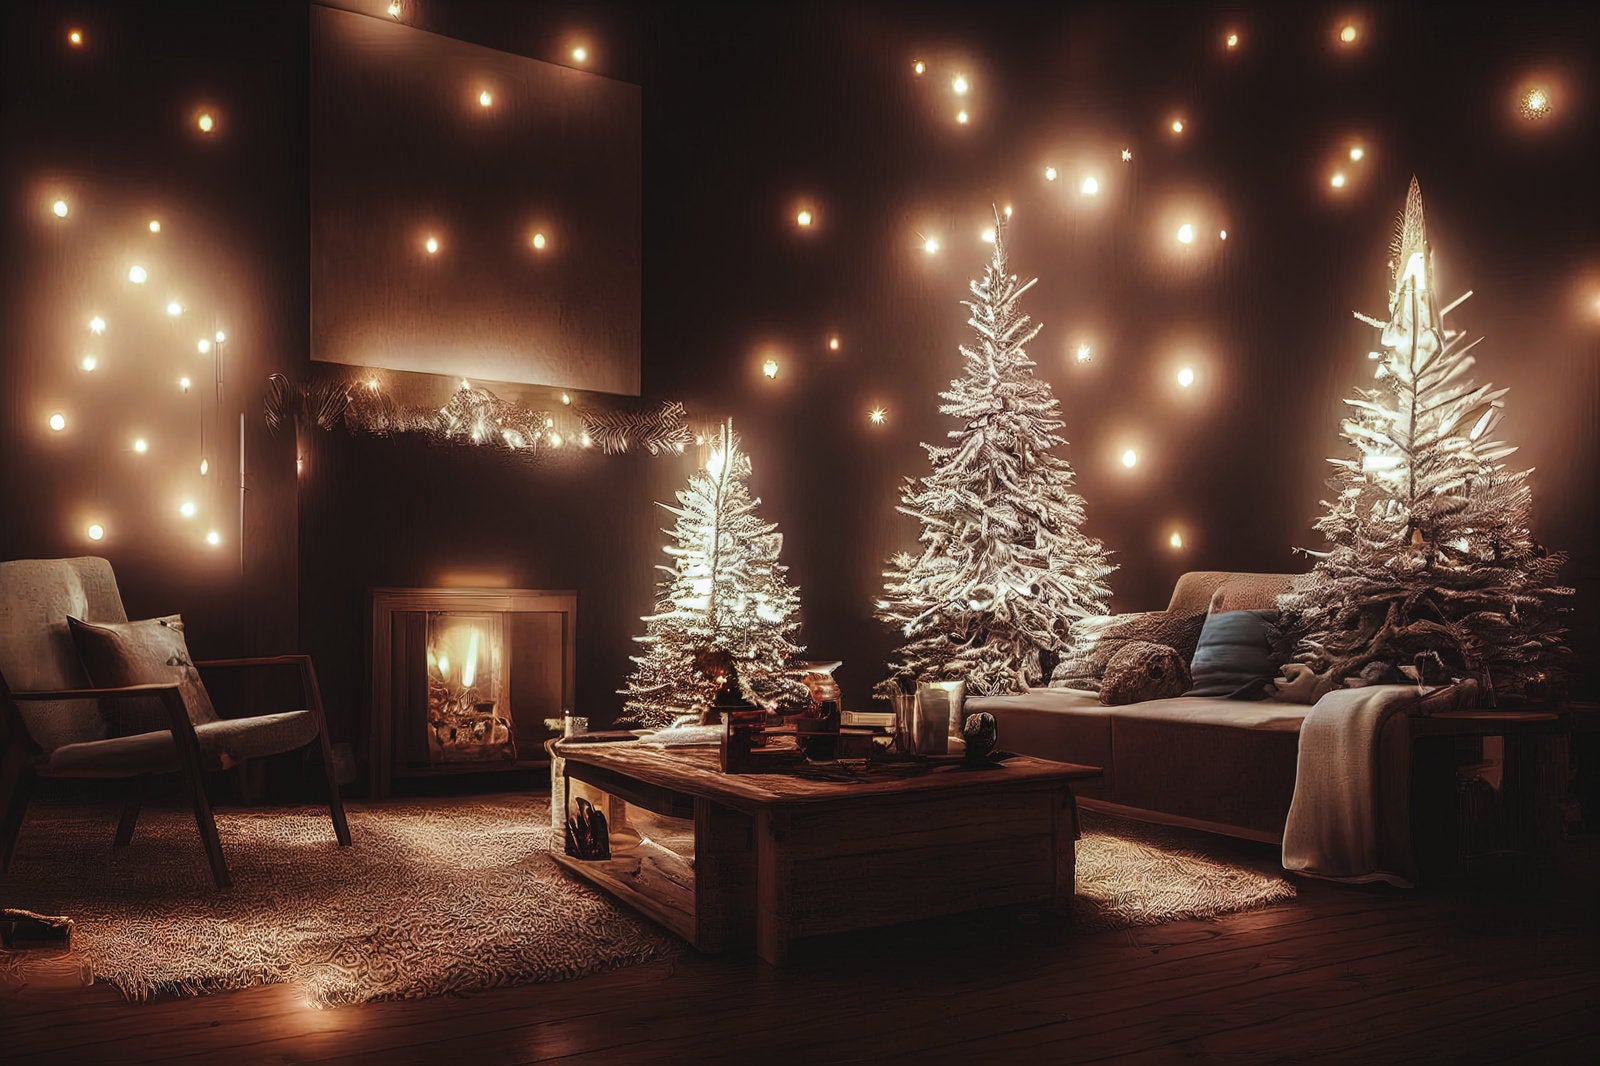 「光に包まれるクリスマスの夜」の写真